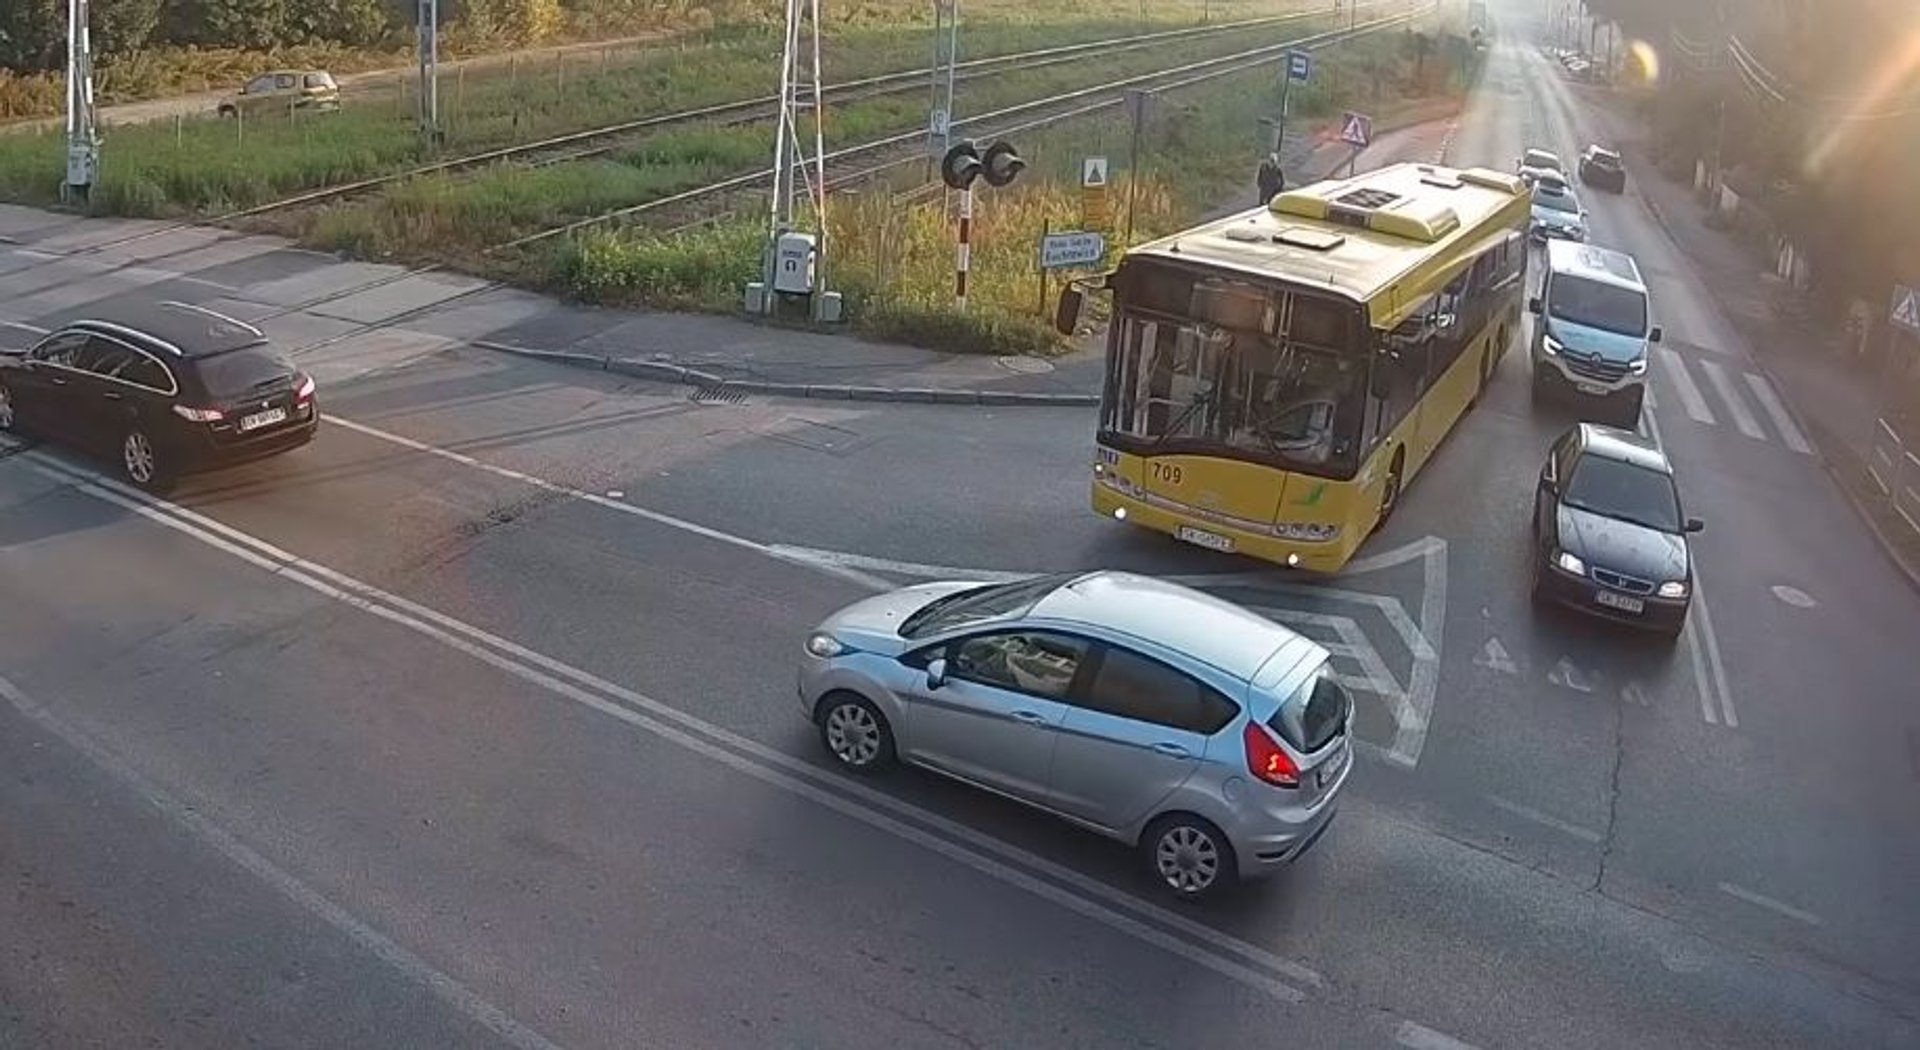 Wypadek - autobus zachodzi przy skręcie